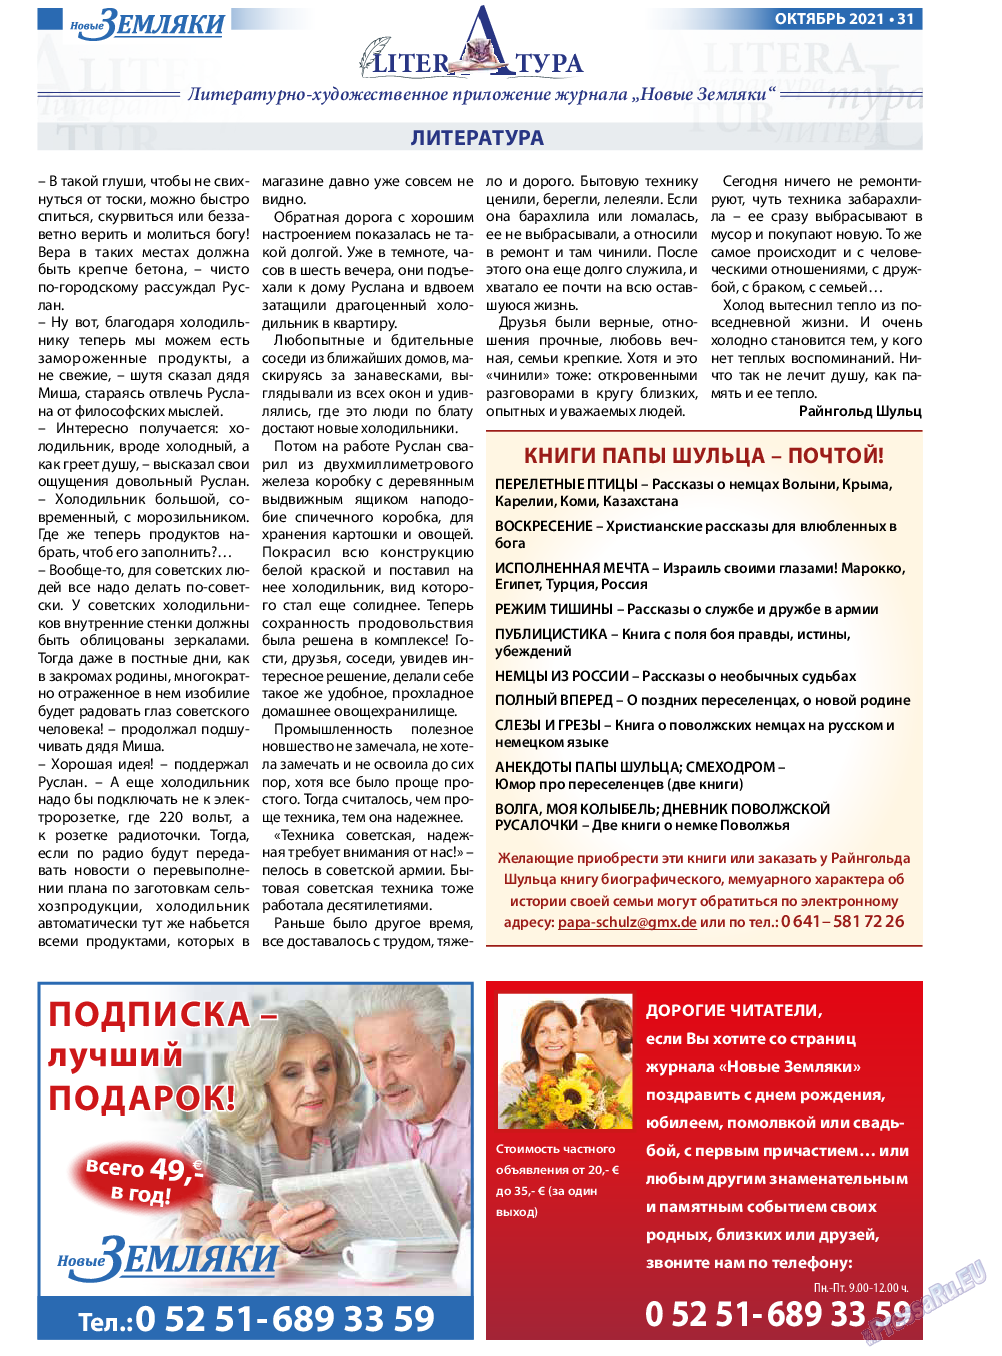 Новые Земляки, газета. 2021 №10 стр.31